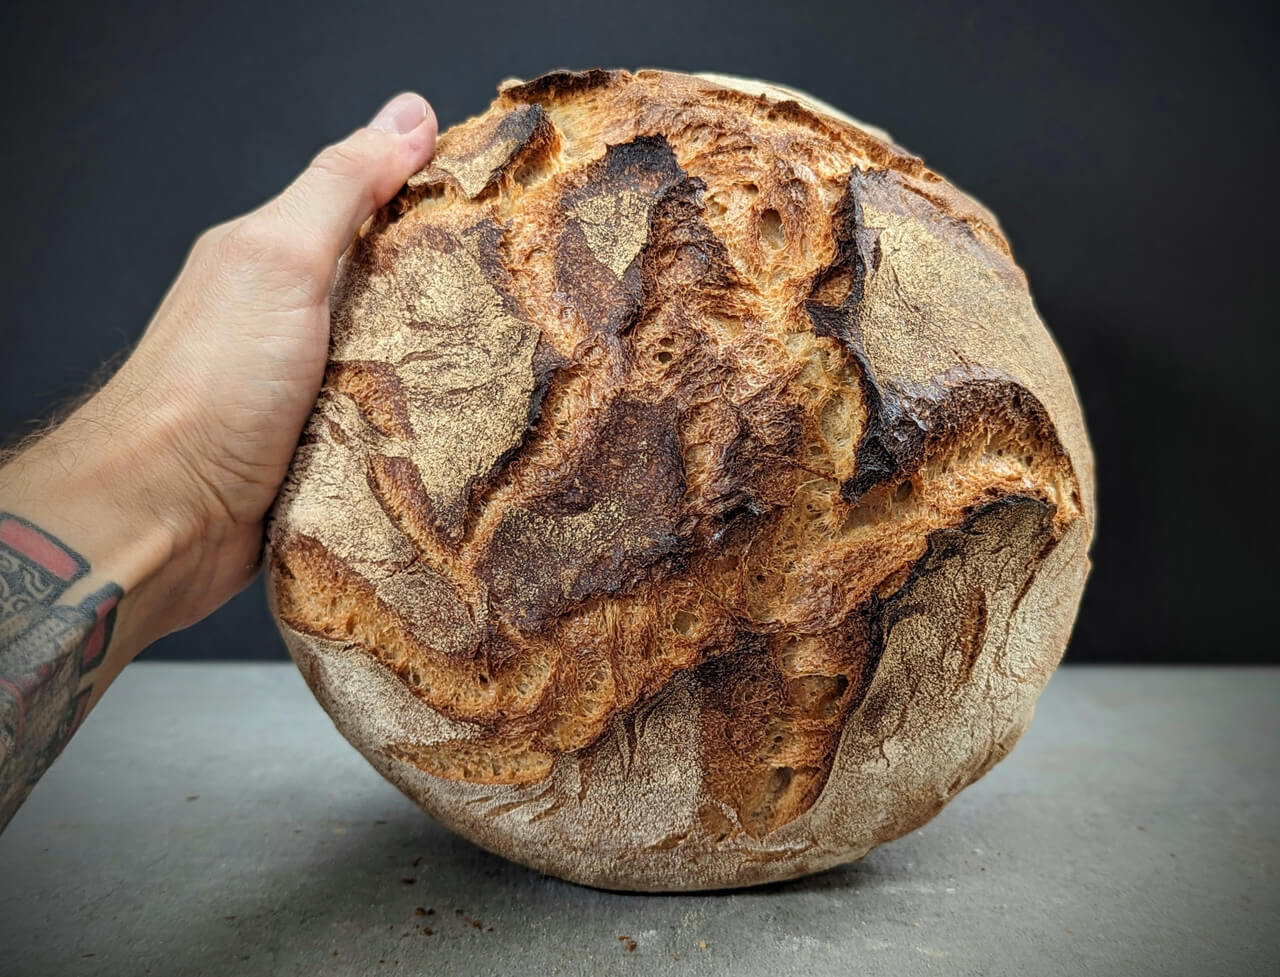 Schnelles Brot backen - Das einfachste Rezept ohne Hefe - Bianca